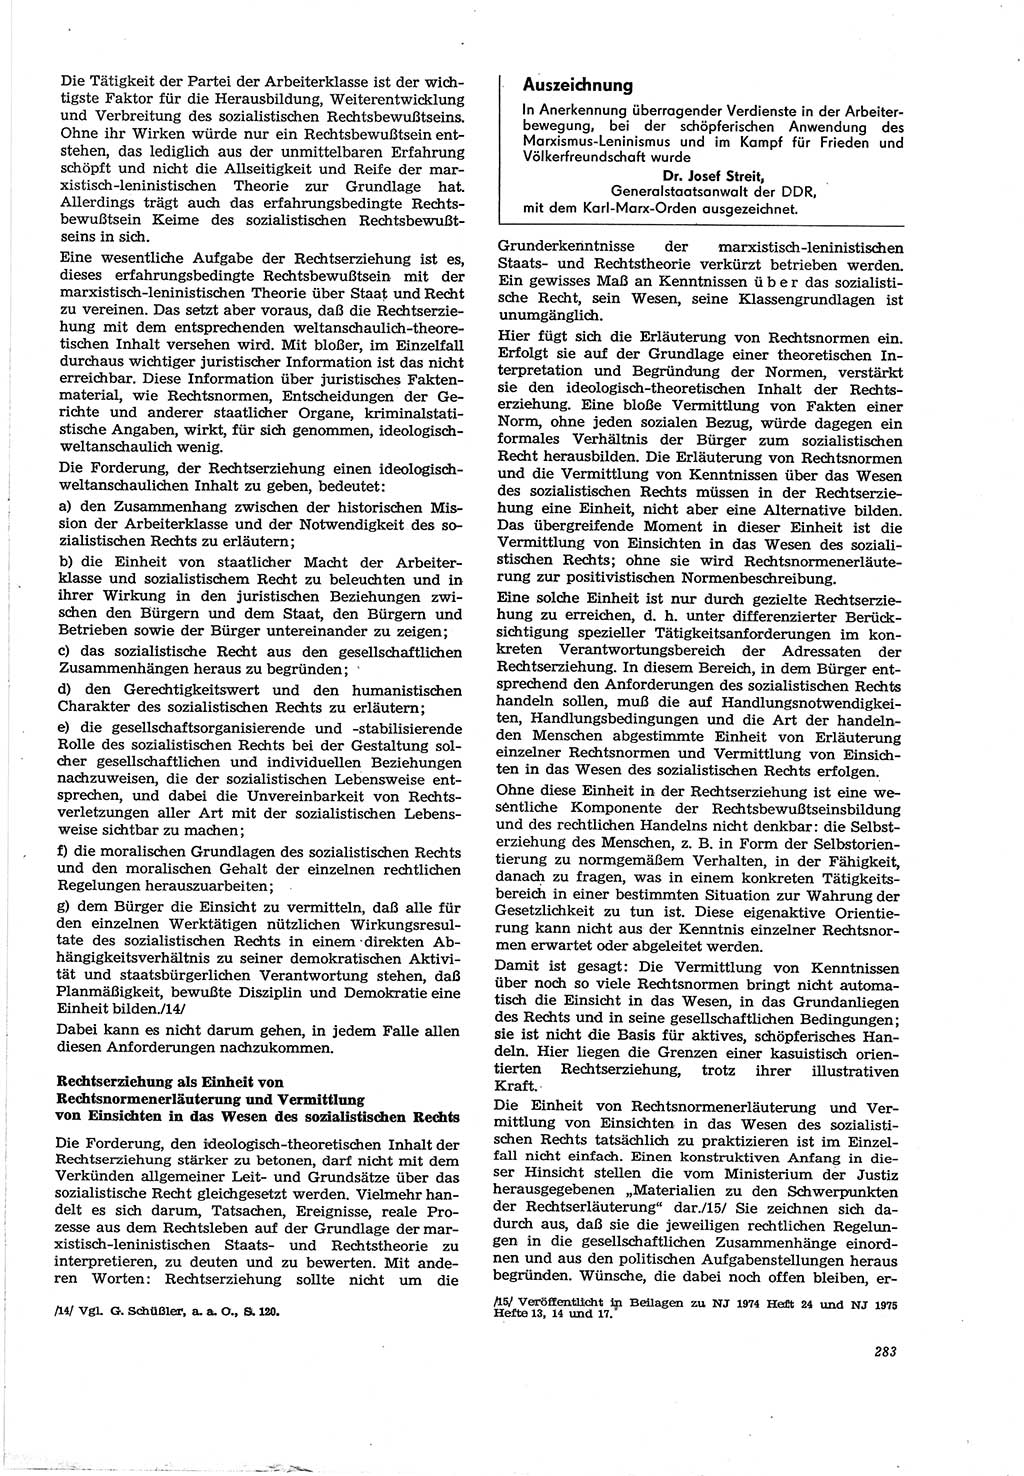 Neue Justiz (NJ), Zeitschrift für Recht und Rechtswissenschaft [Deutsche Demokratische Republik (DDR)], 30. Jahrgang 1976, Seite 283 (NJ DDR 1976, S. 283)